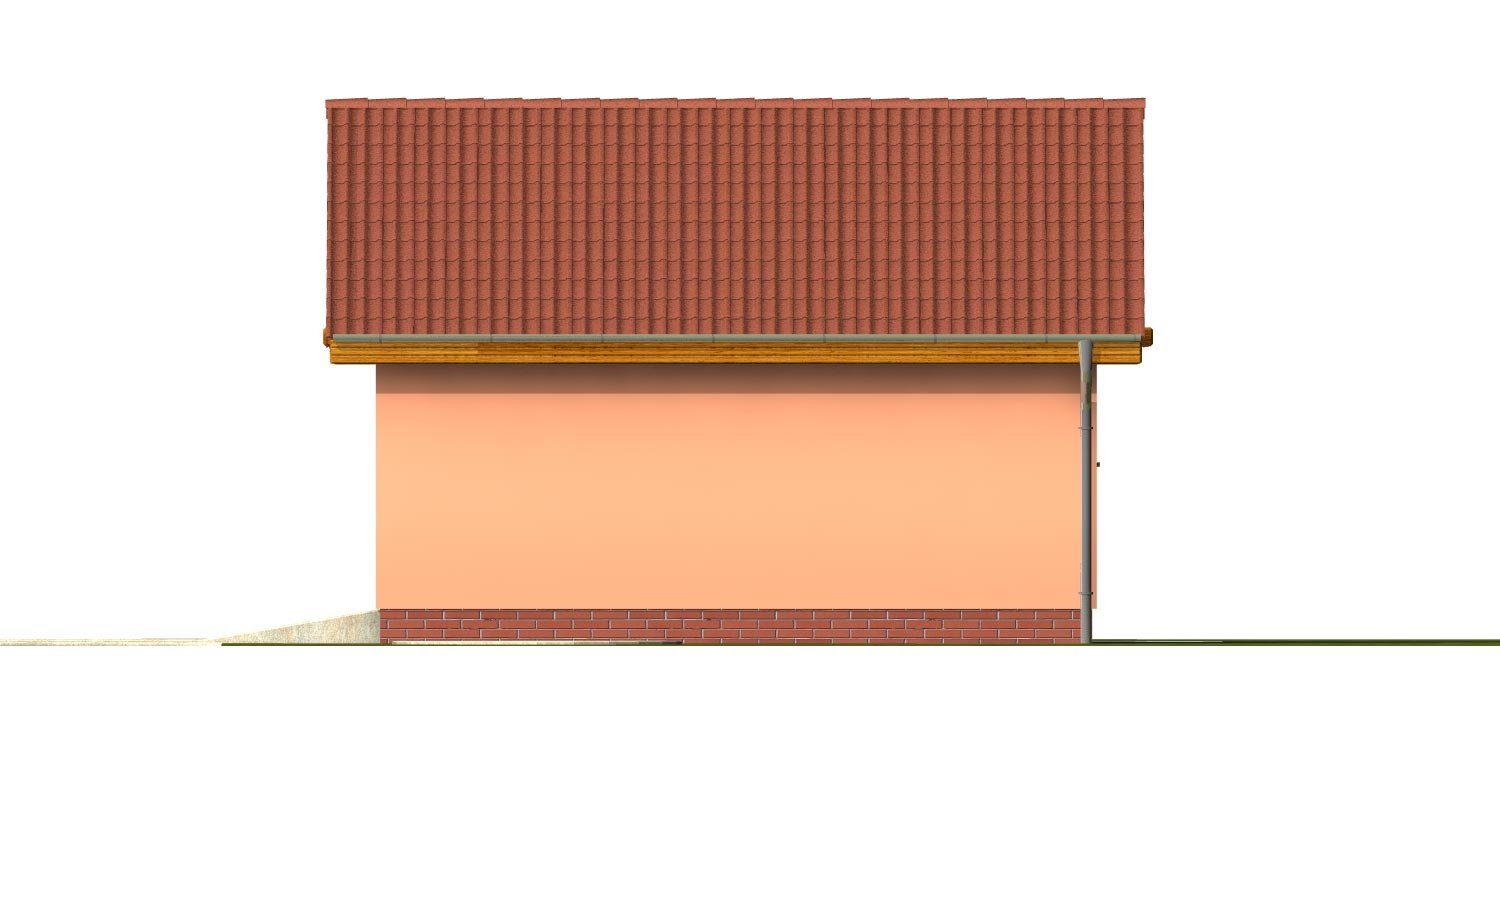 Zrkadlový pohľad 4. - Samostatně stojící dvojgaráž se sedlovou střechou a širokými garážovými vraty